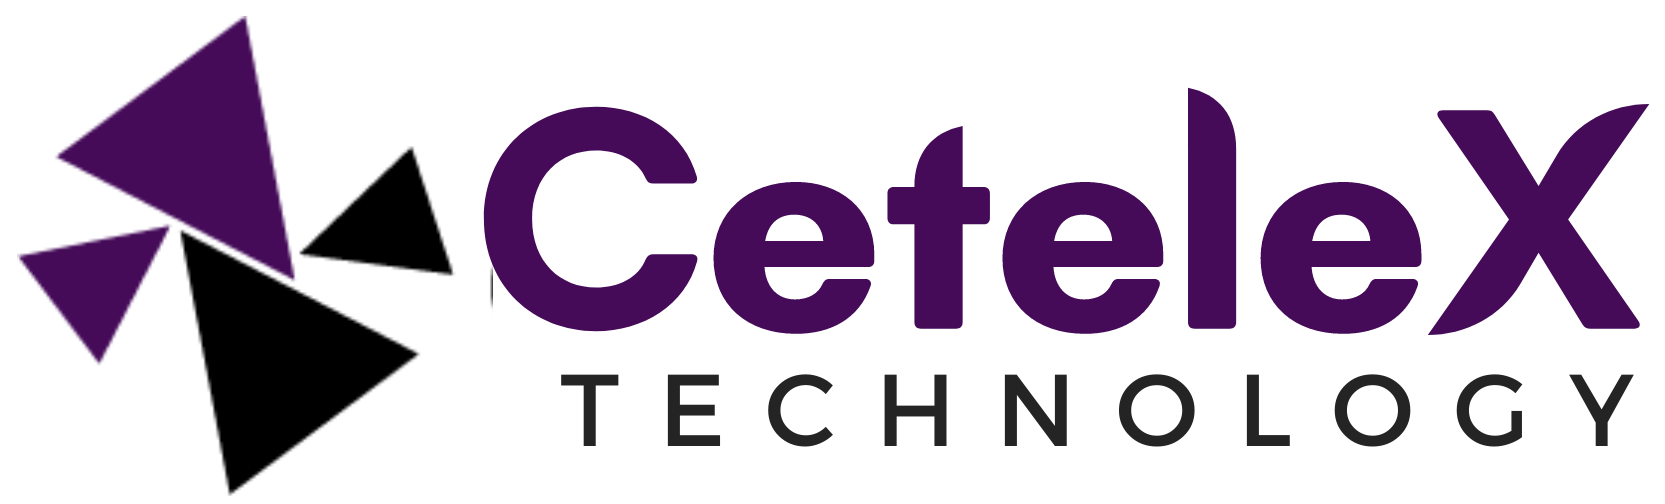 Cetelex Technology